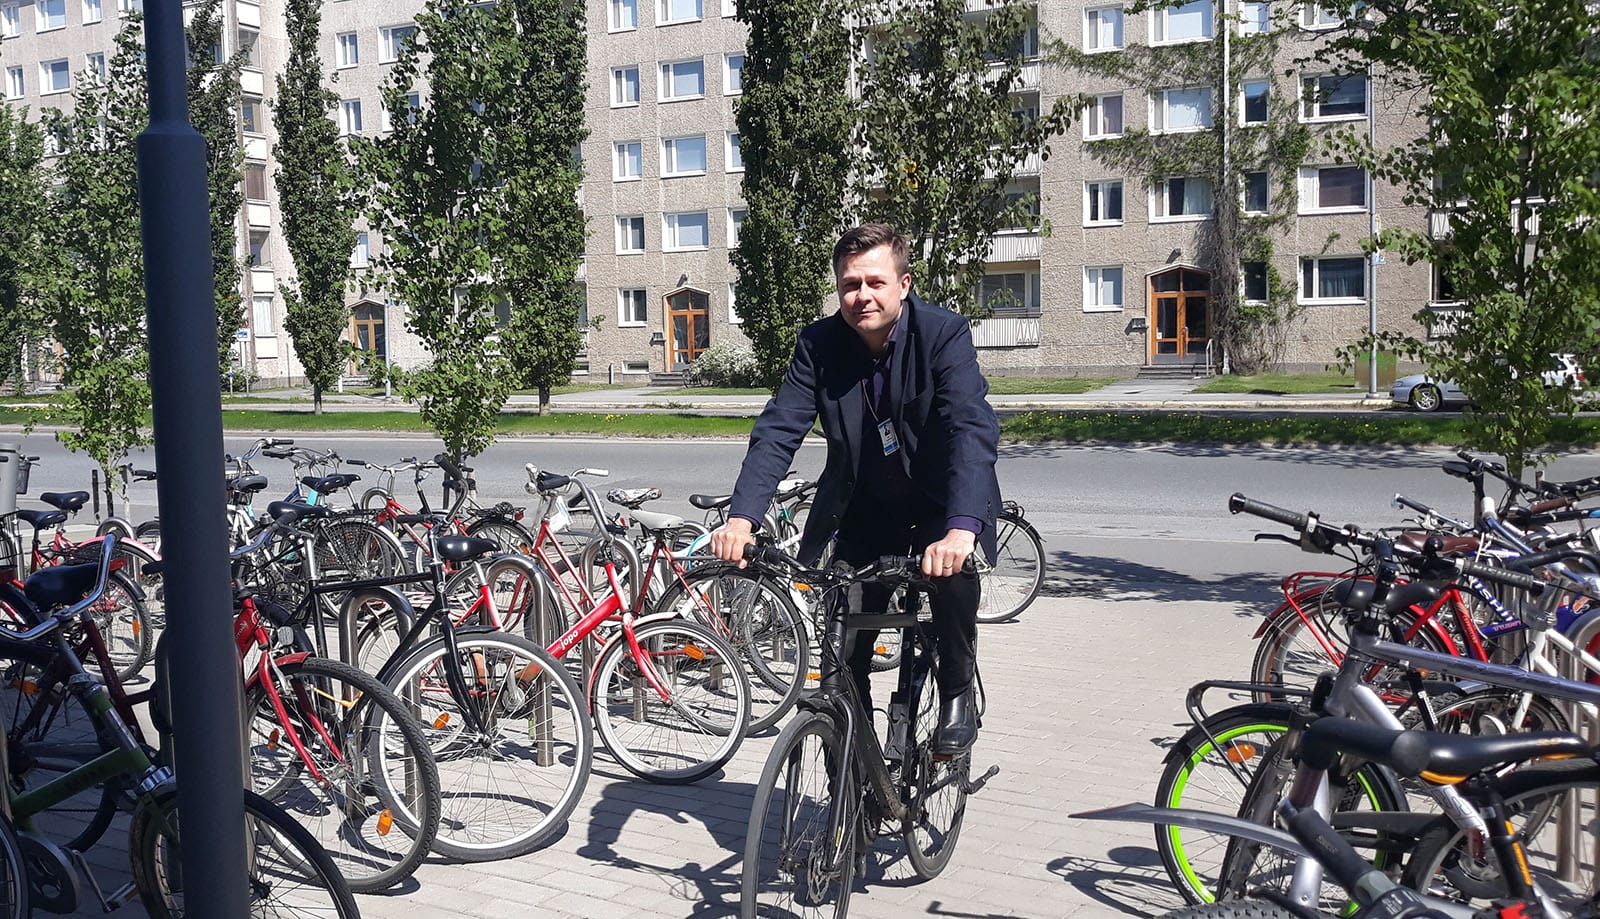 ri Iisakkala pyöräilee usein töihin. | Jari Iisakkala often rides a bike to work.